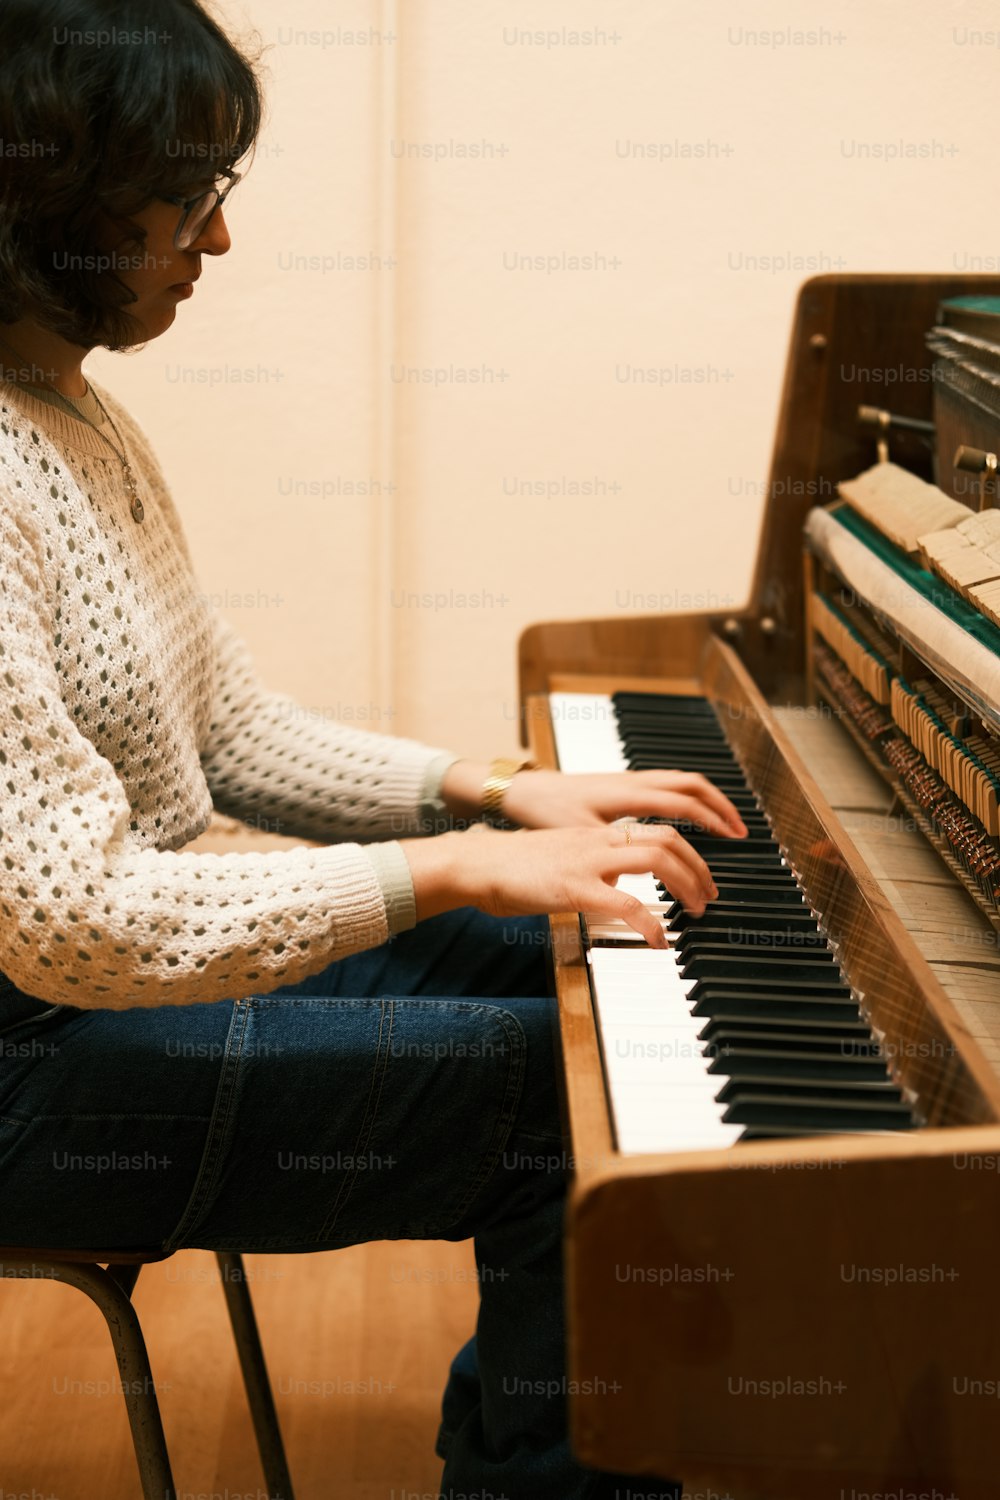 uma mulher sentada em um piano tocando um instrumento musical